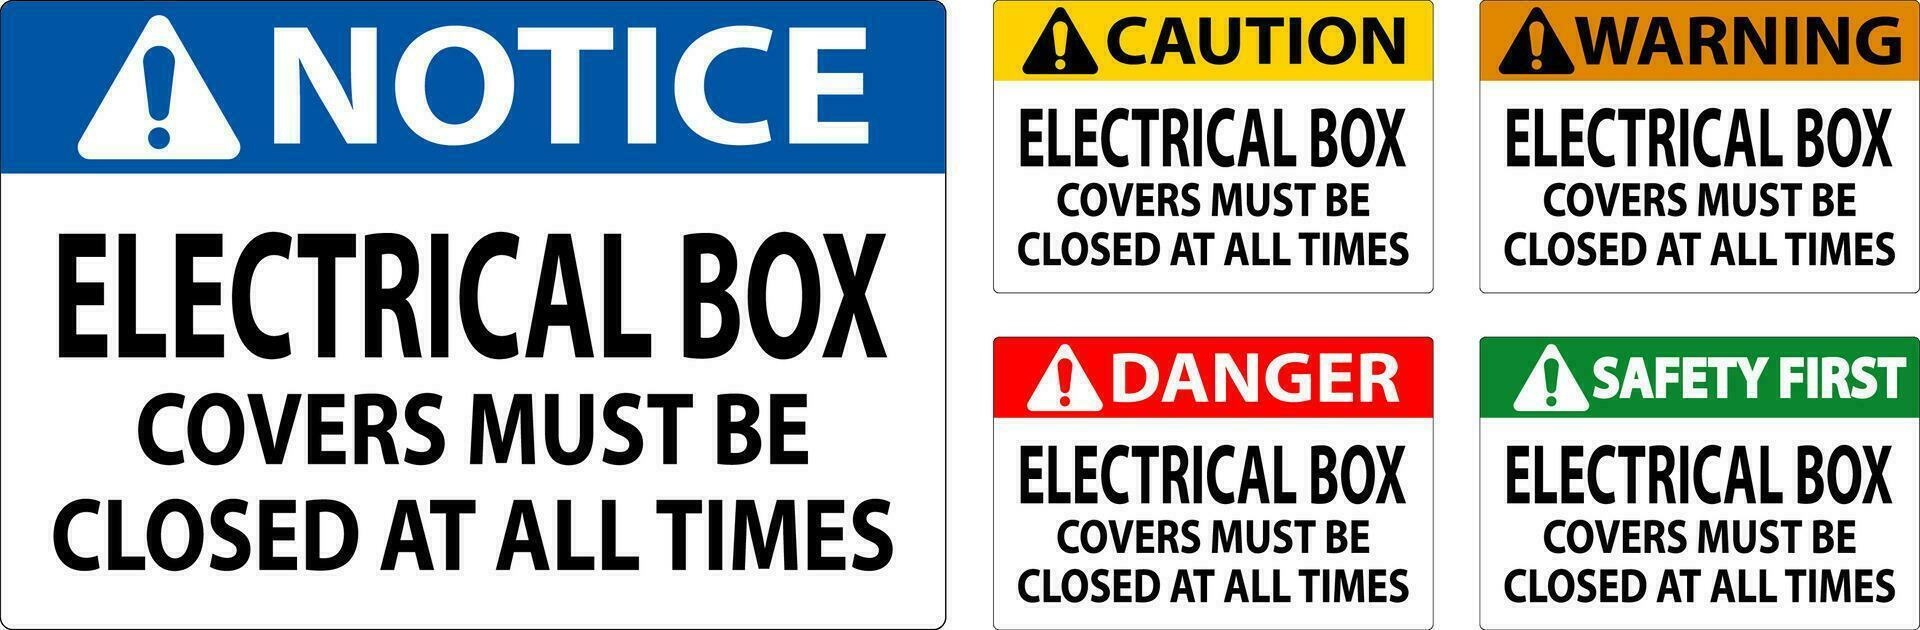 Pericolo cartello elettrico scatola coperture dovere essere chiuso a tutti volte vettore